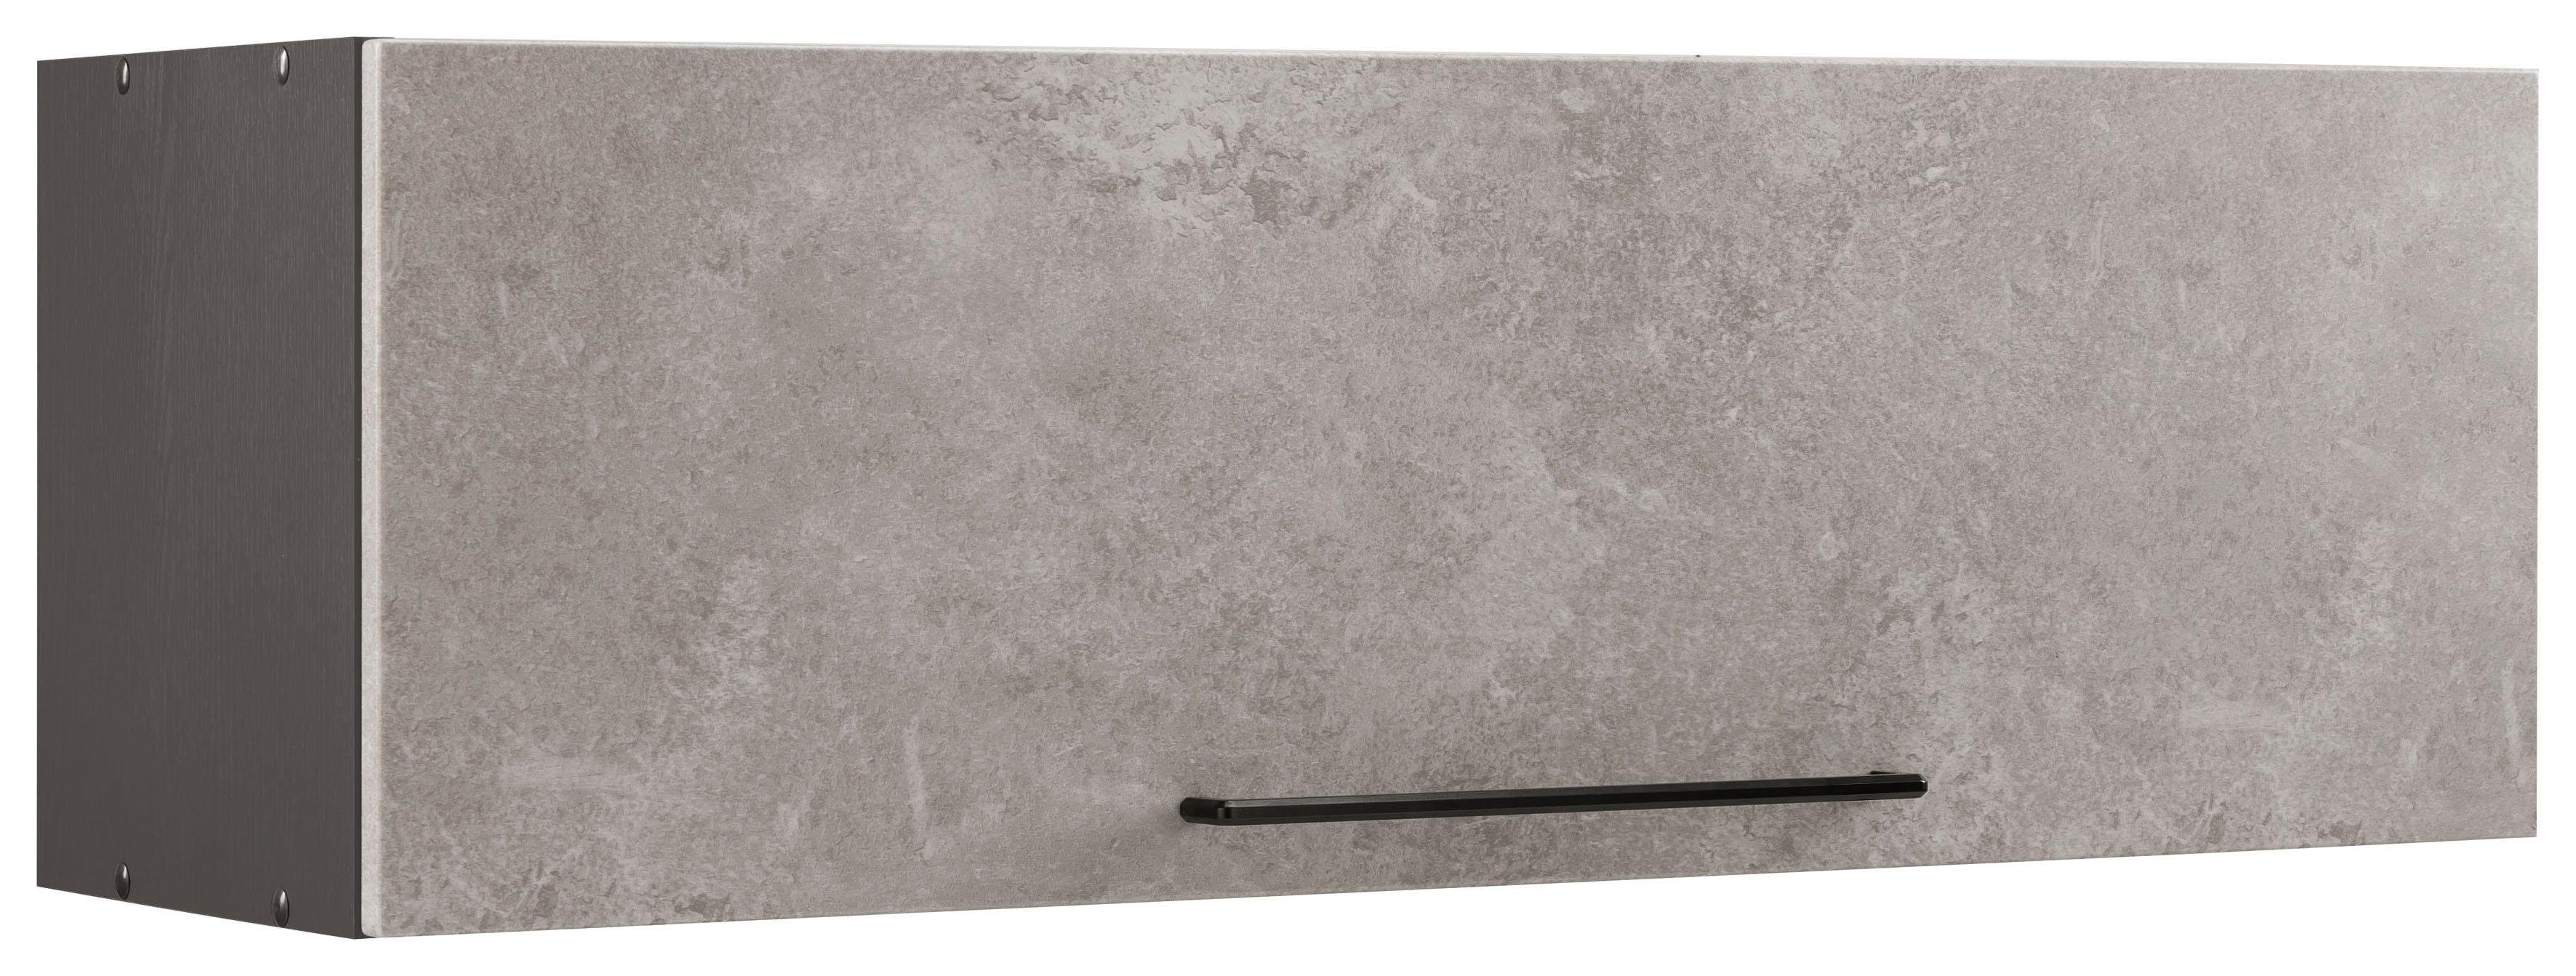 HELD MÖBEL Klapphängeschrank Tulsa 100 cm breit, mit 1 Klappe, schwarzer Metallgriff, MDF Front betonfarben hell | grafit